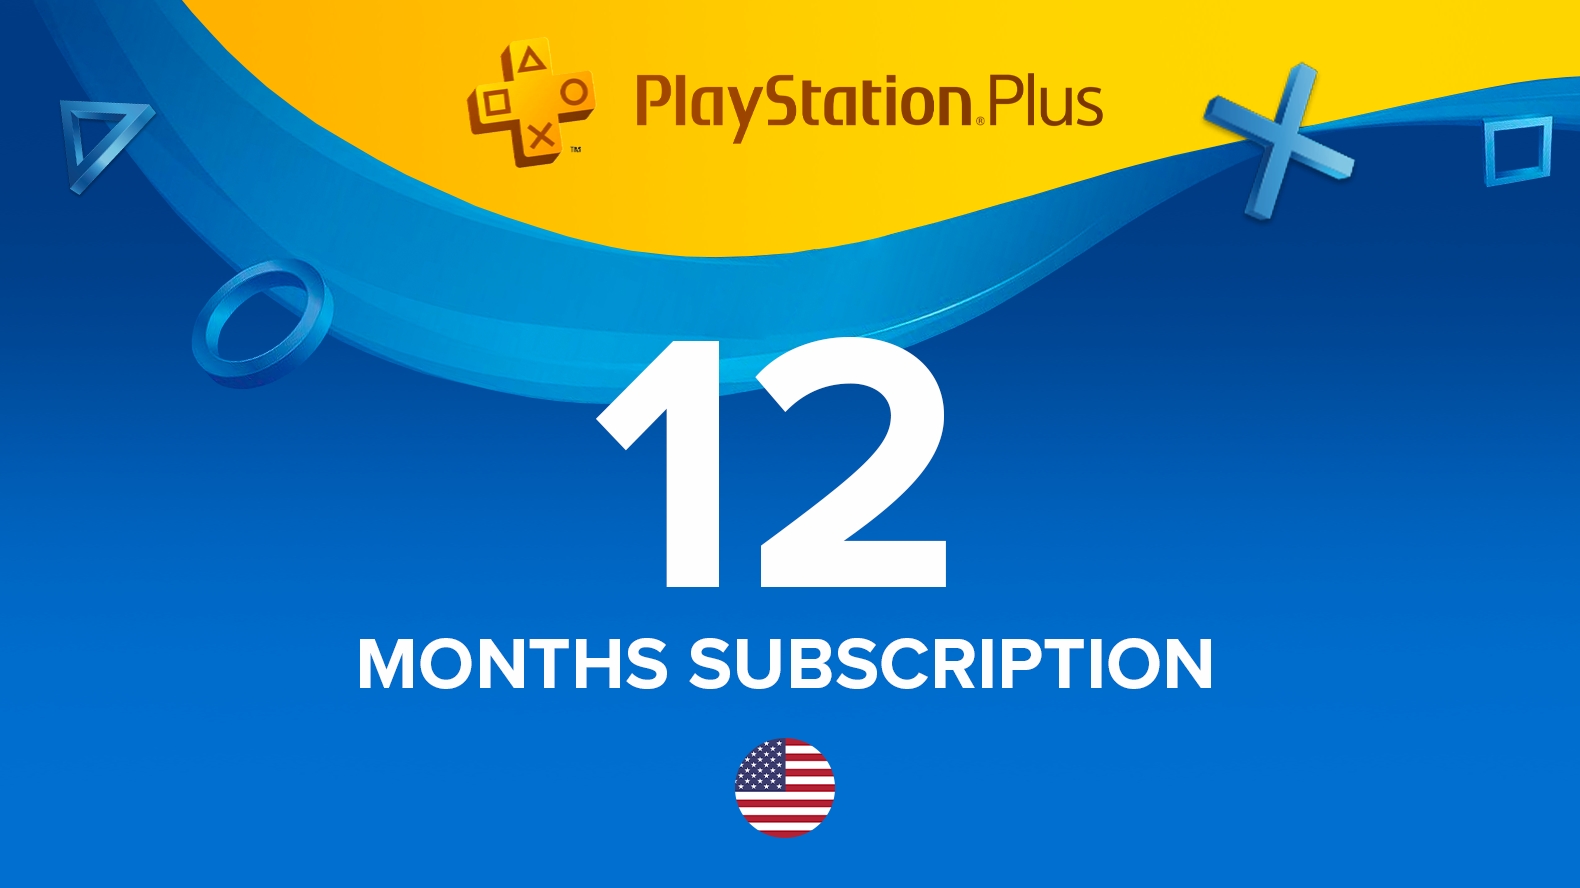 Carte PlayStation Plus Premium 3 mois